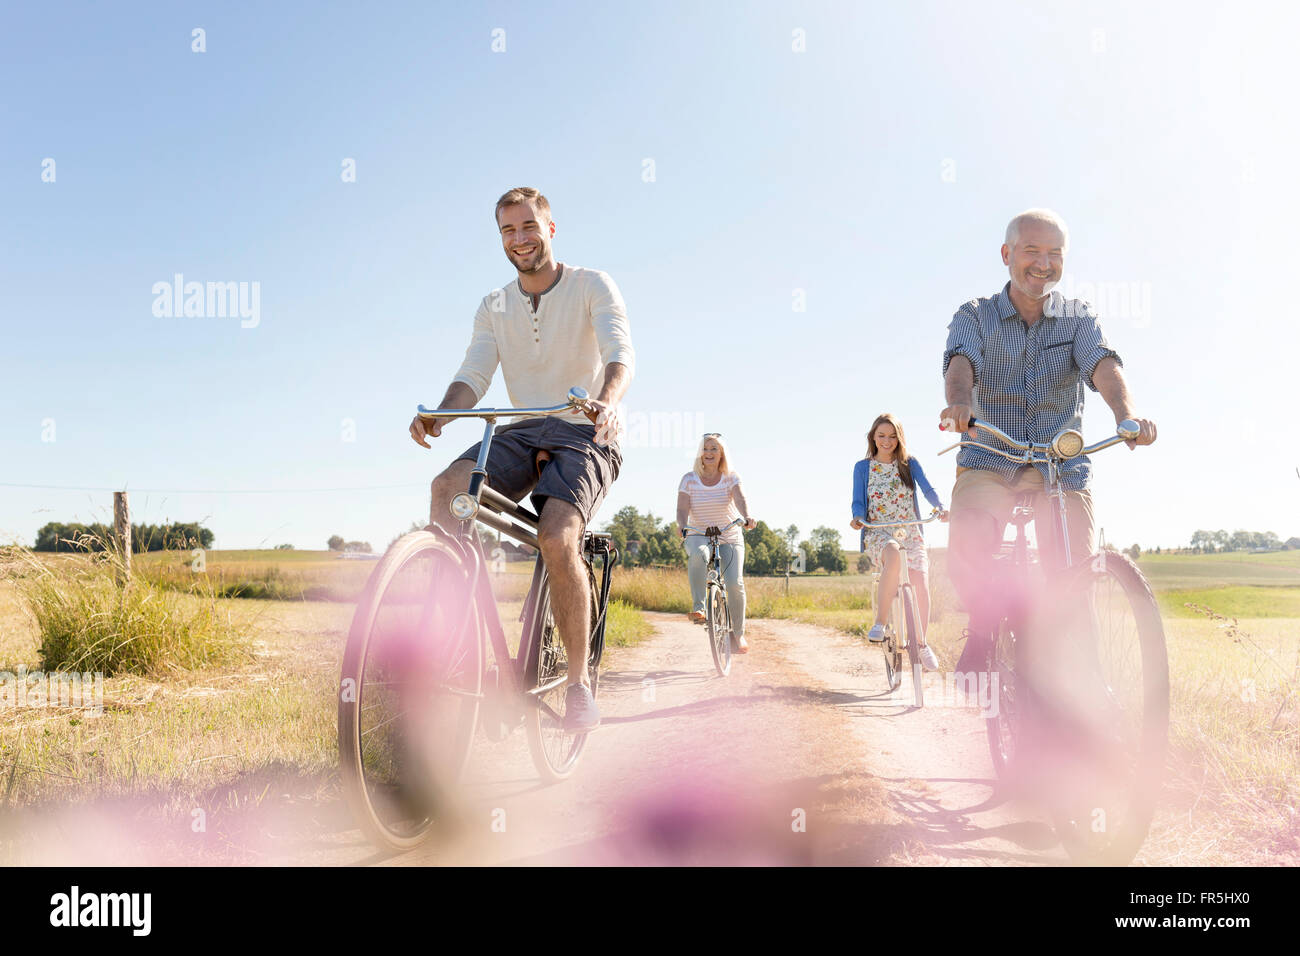 Family riding bicycles sur chemin de terre rurale ensoleillée Banque D'Images